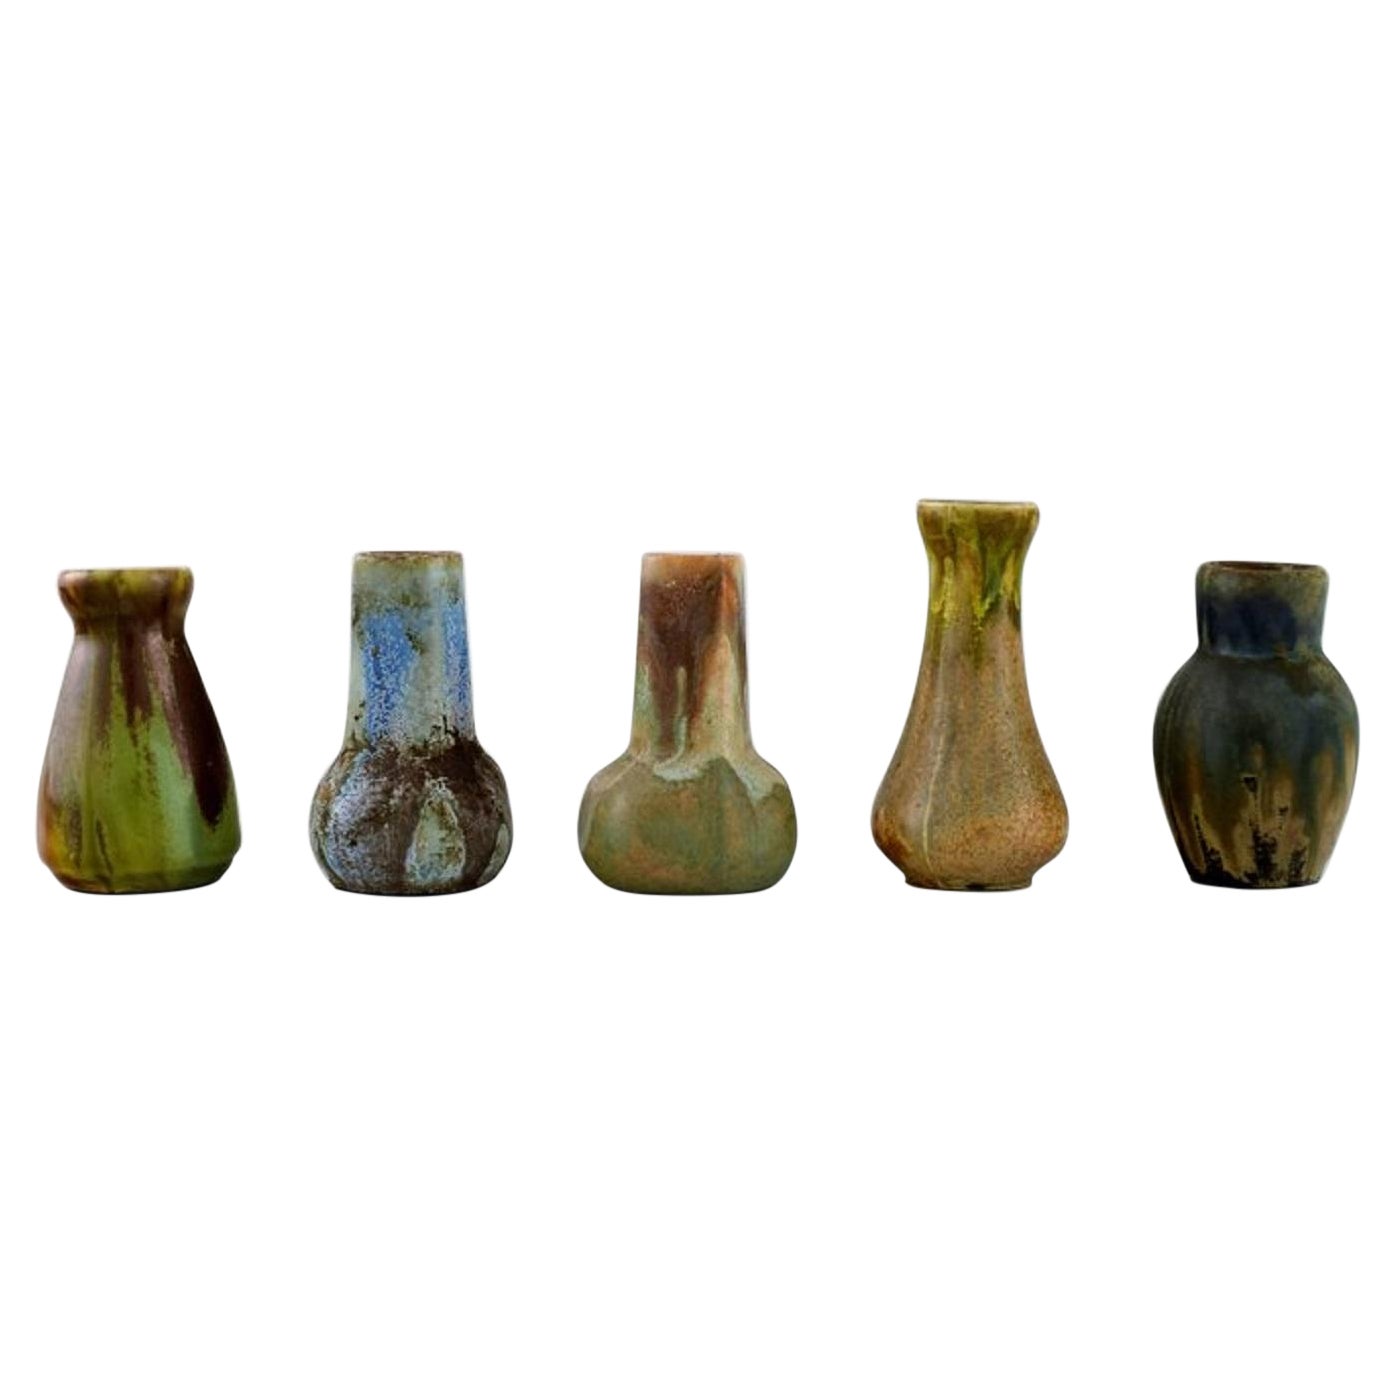 Five Belgian Miniature Vases in Glazed Ceramics, Mid-20th C